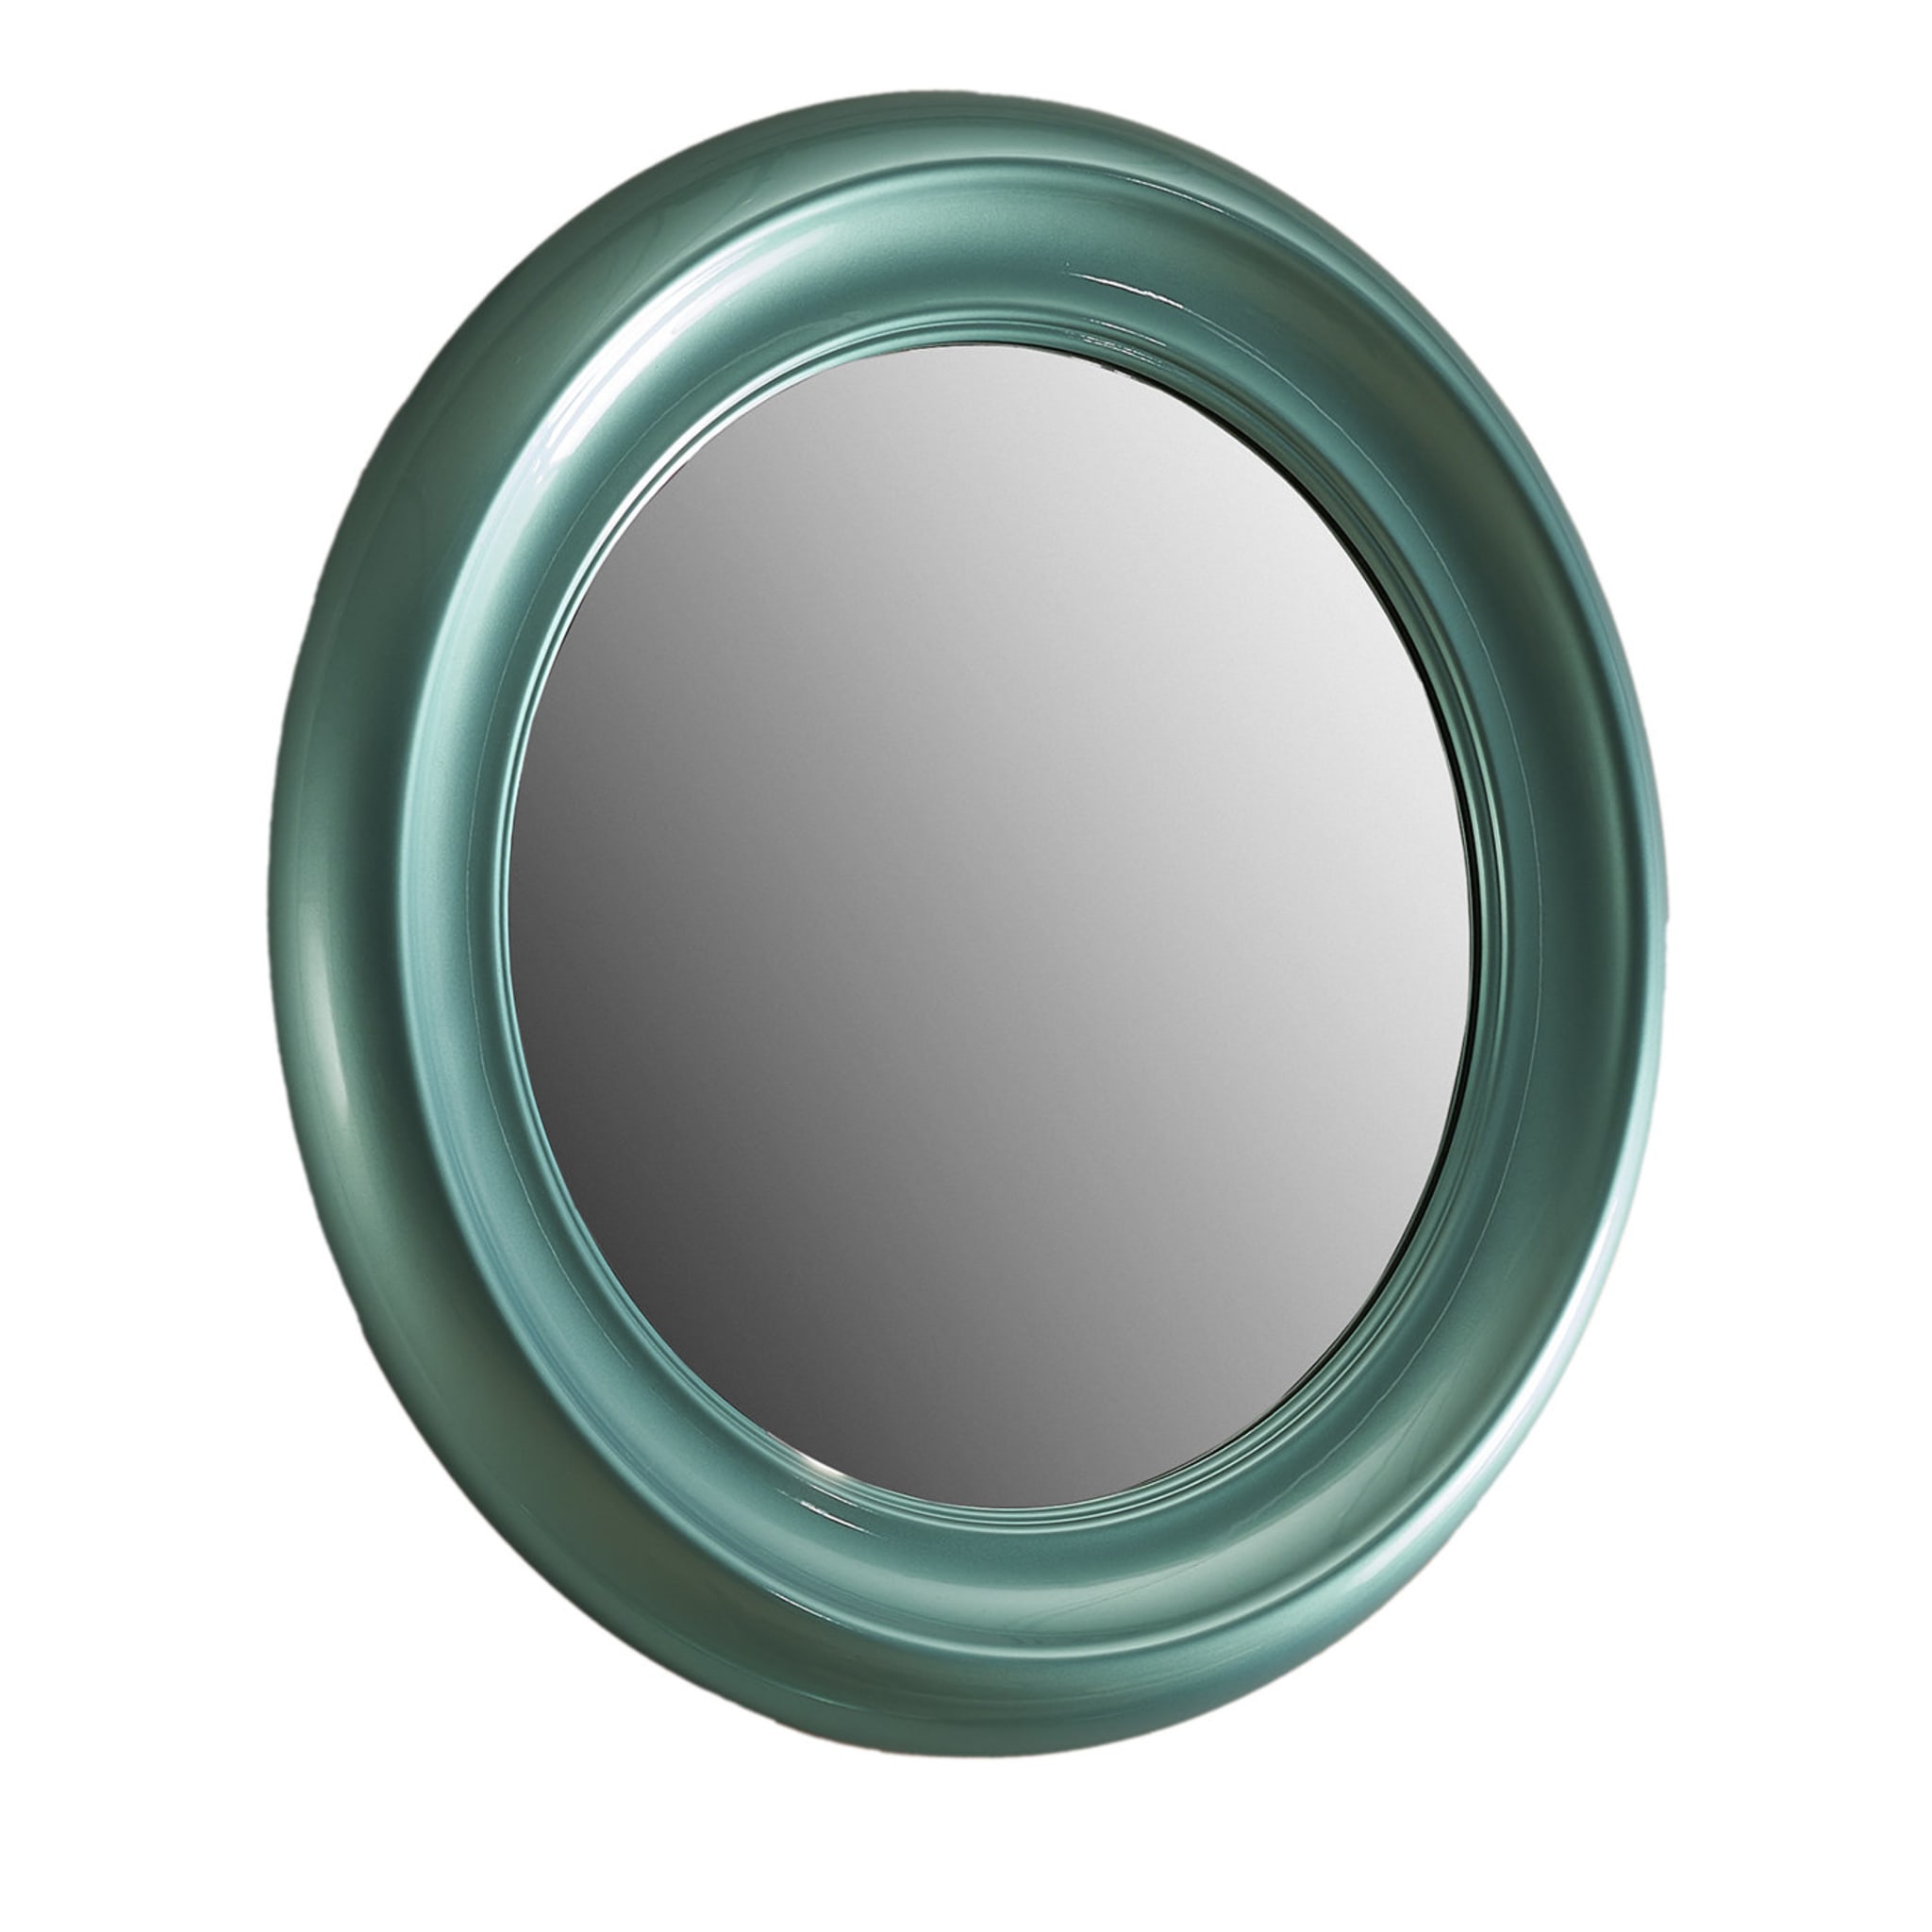 Specchio medio zaffiro - Vista principale